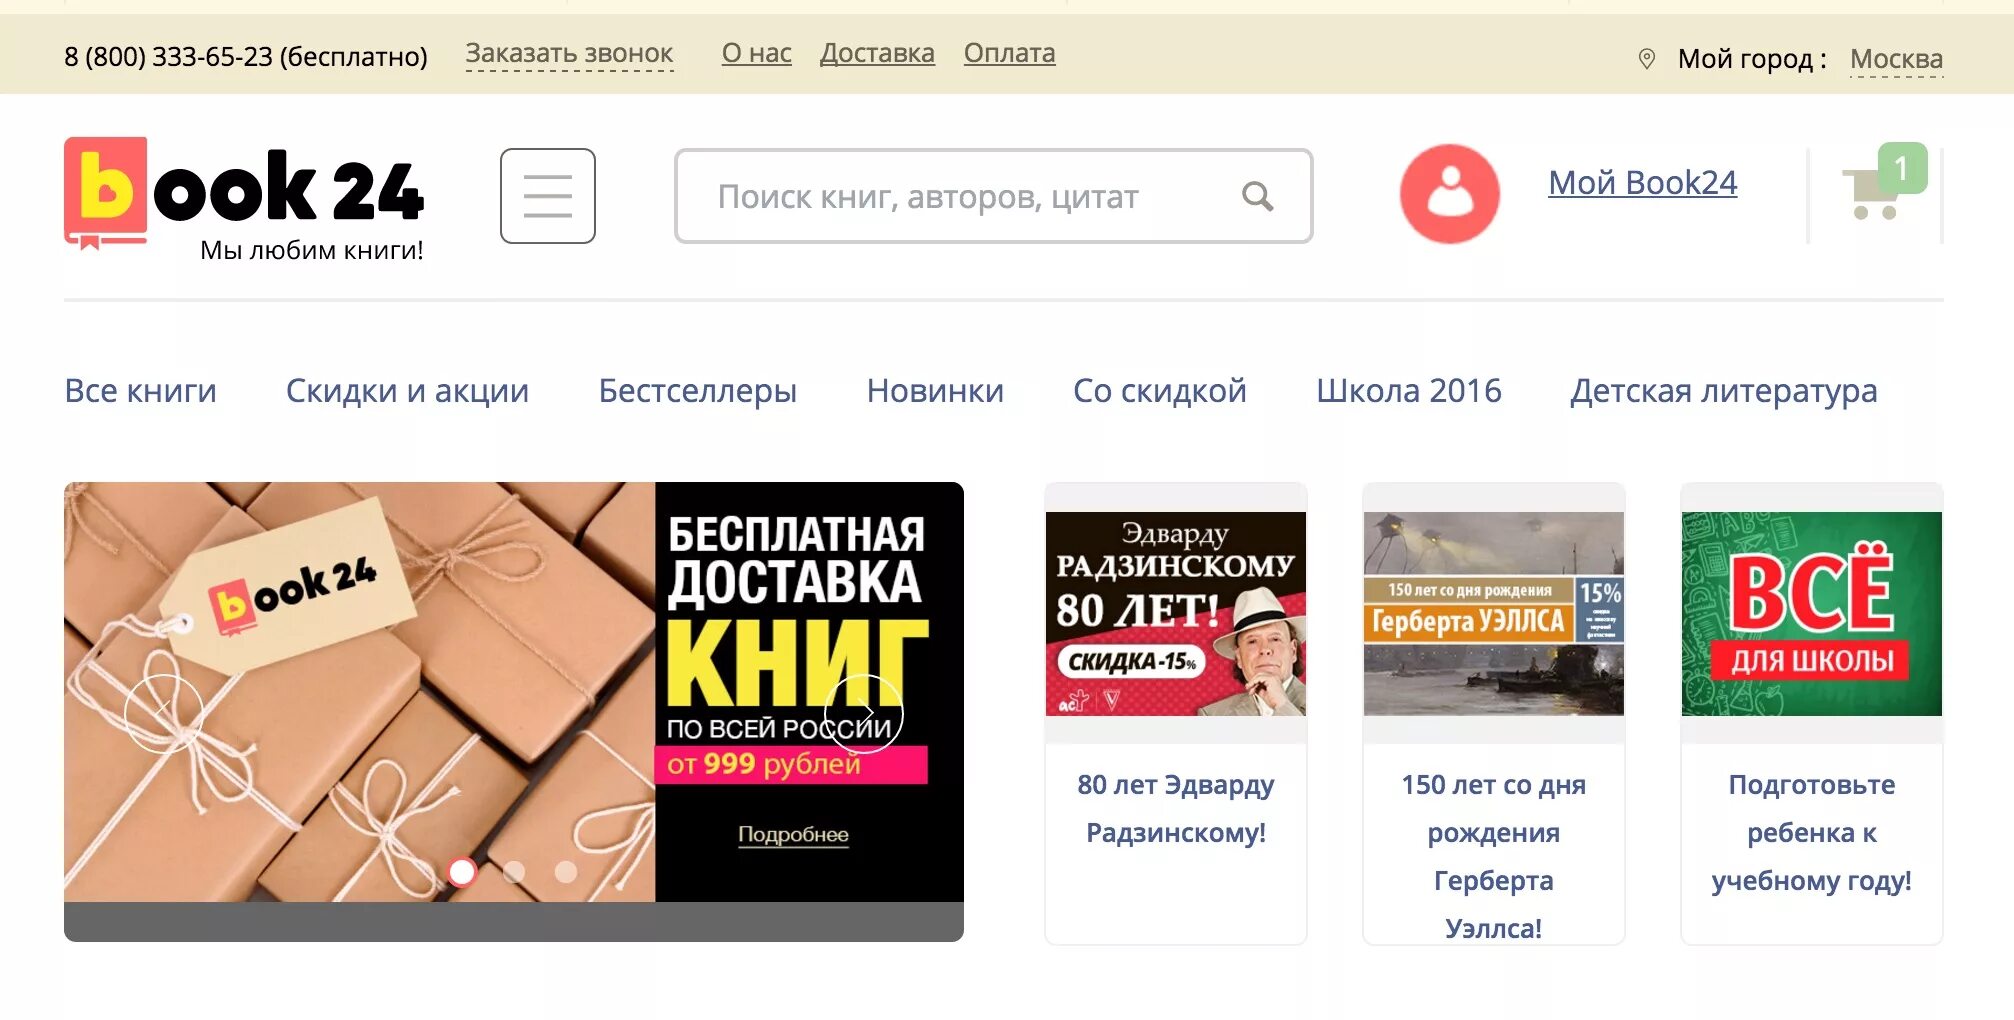 Сайт заказать книги. Book24 интернет-магазин. Интернет магазин книг. Books24 интернет магазин. Book24.ru интернет-магазин.